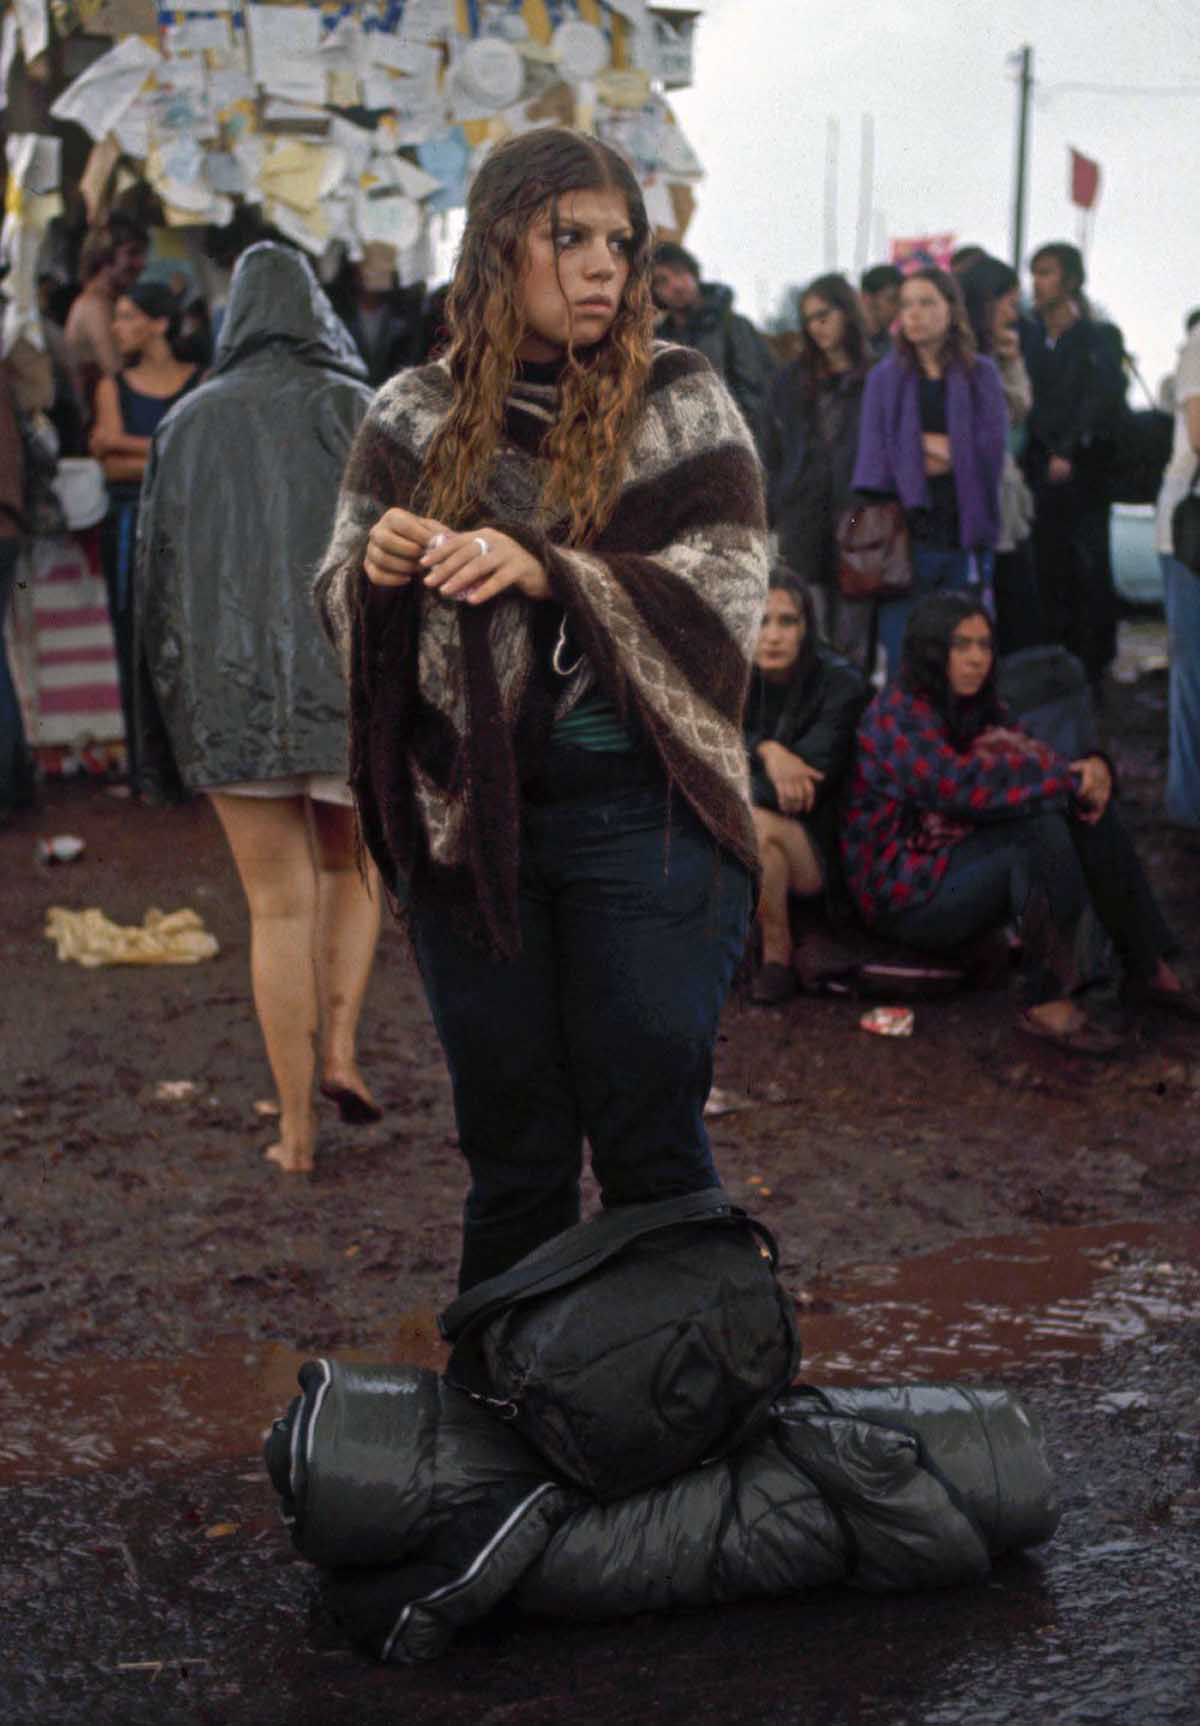 Fotos impressionantes retratam a moda rebelde de Woodstock em 1969 24